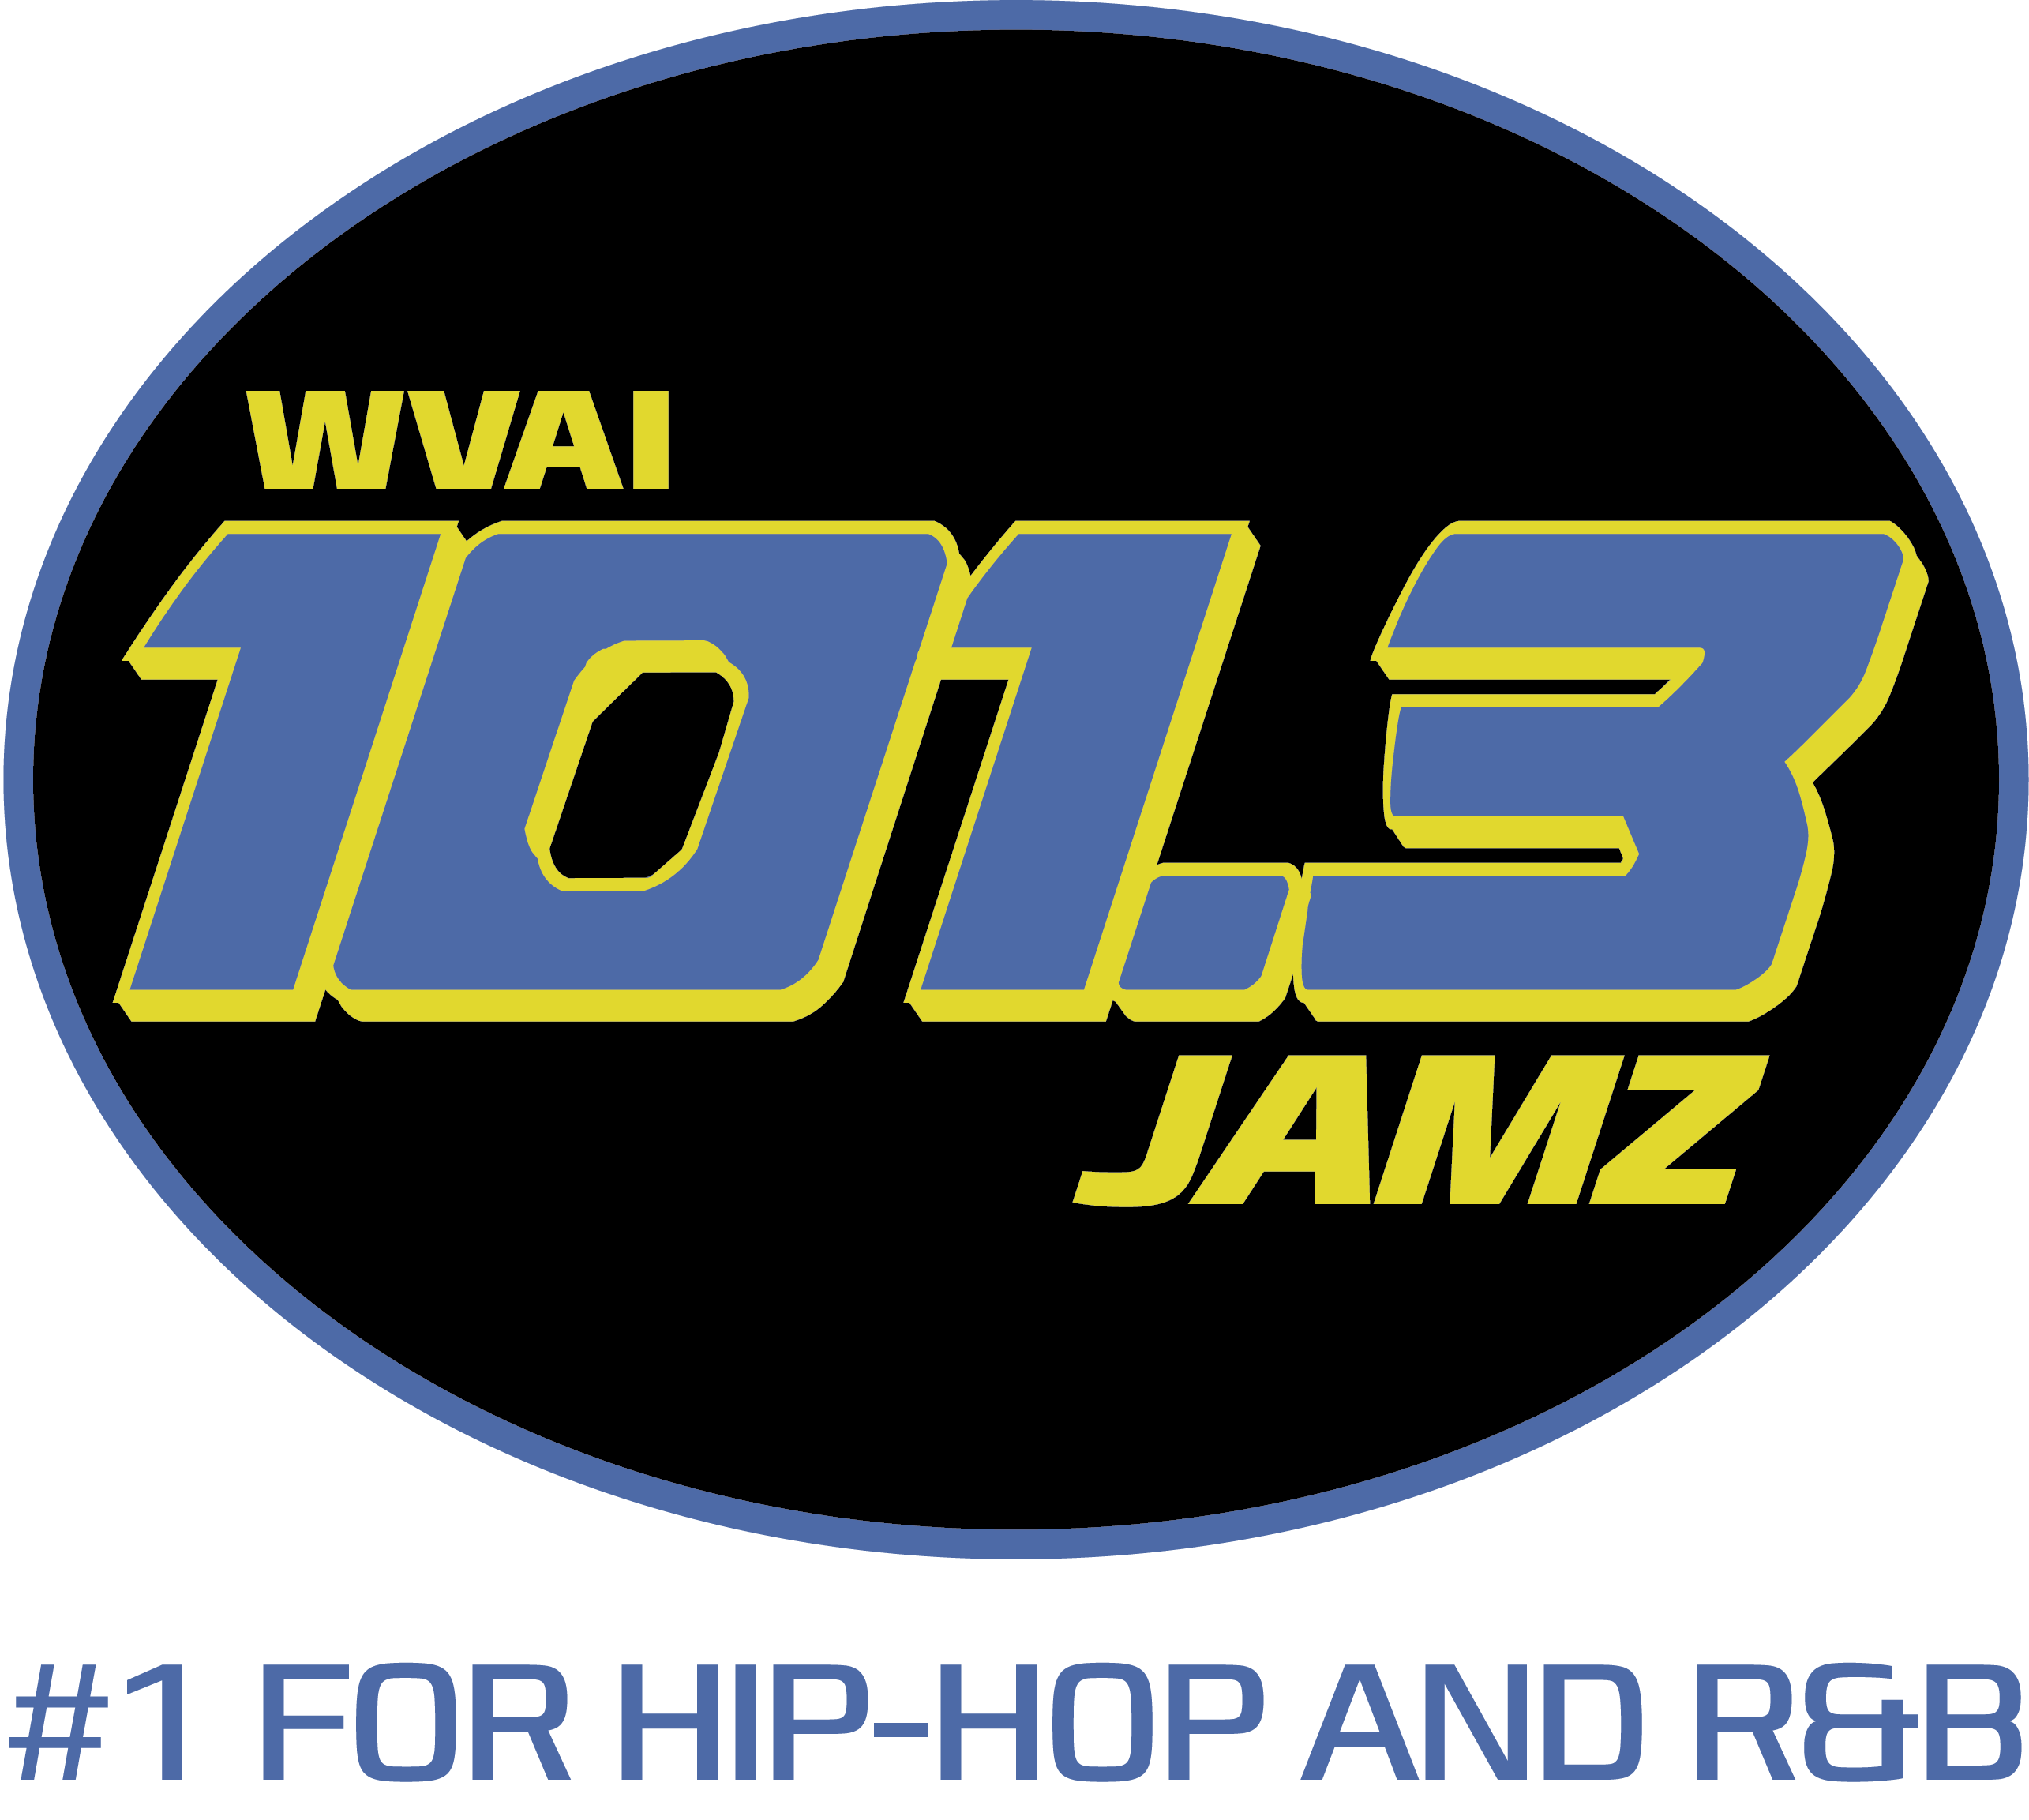 WVAI Logo